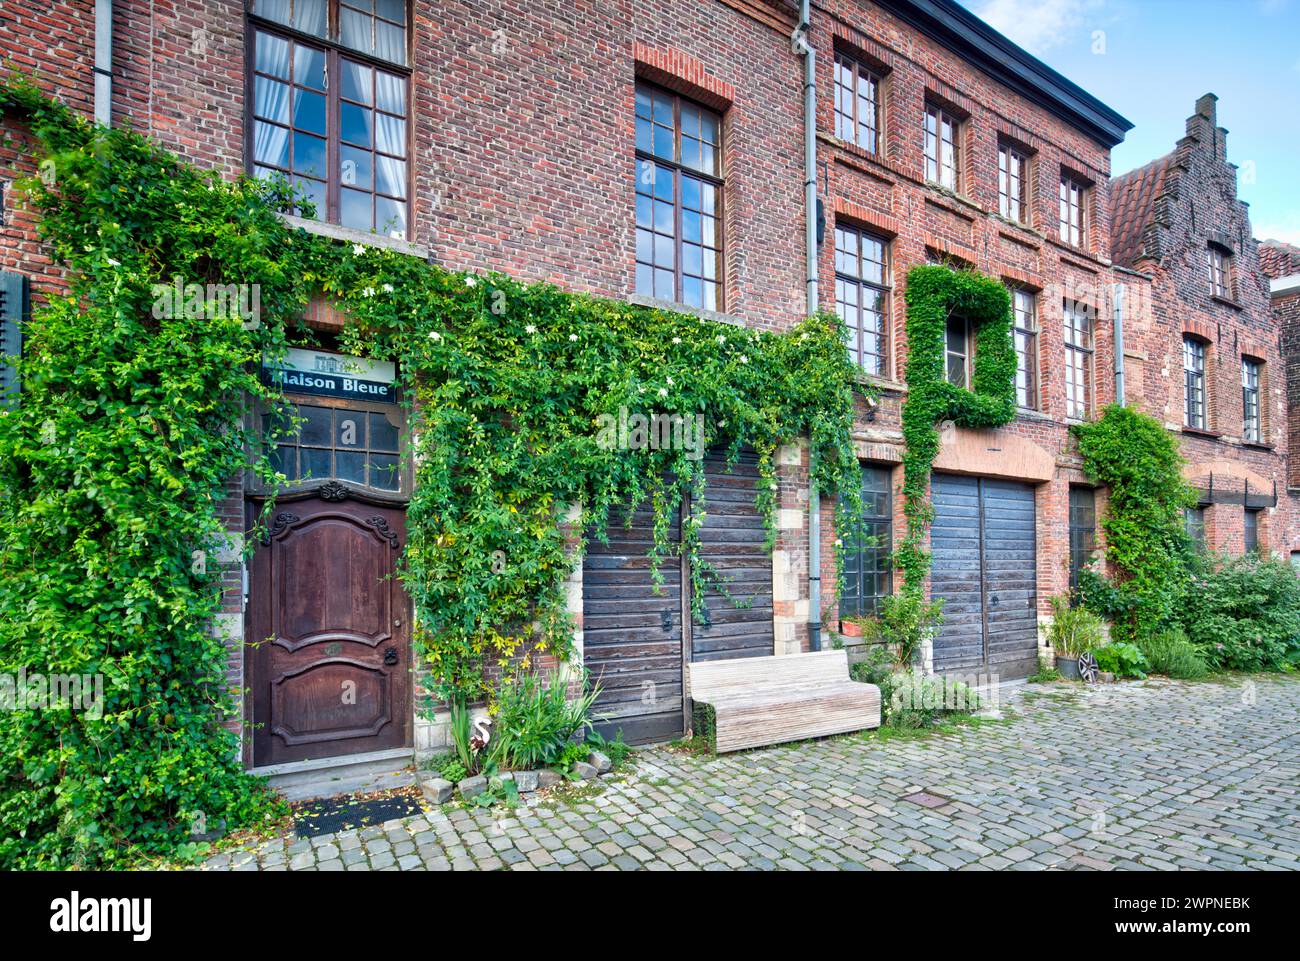 Maison Bleue, facciata della casa, Lieve Canal, architettura, quartiere, View, Gand, Fiandre orientali, Belgio, Foto Stock